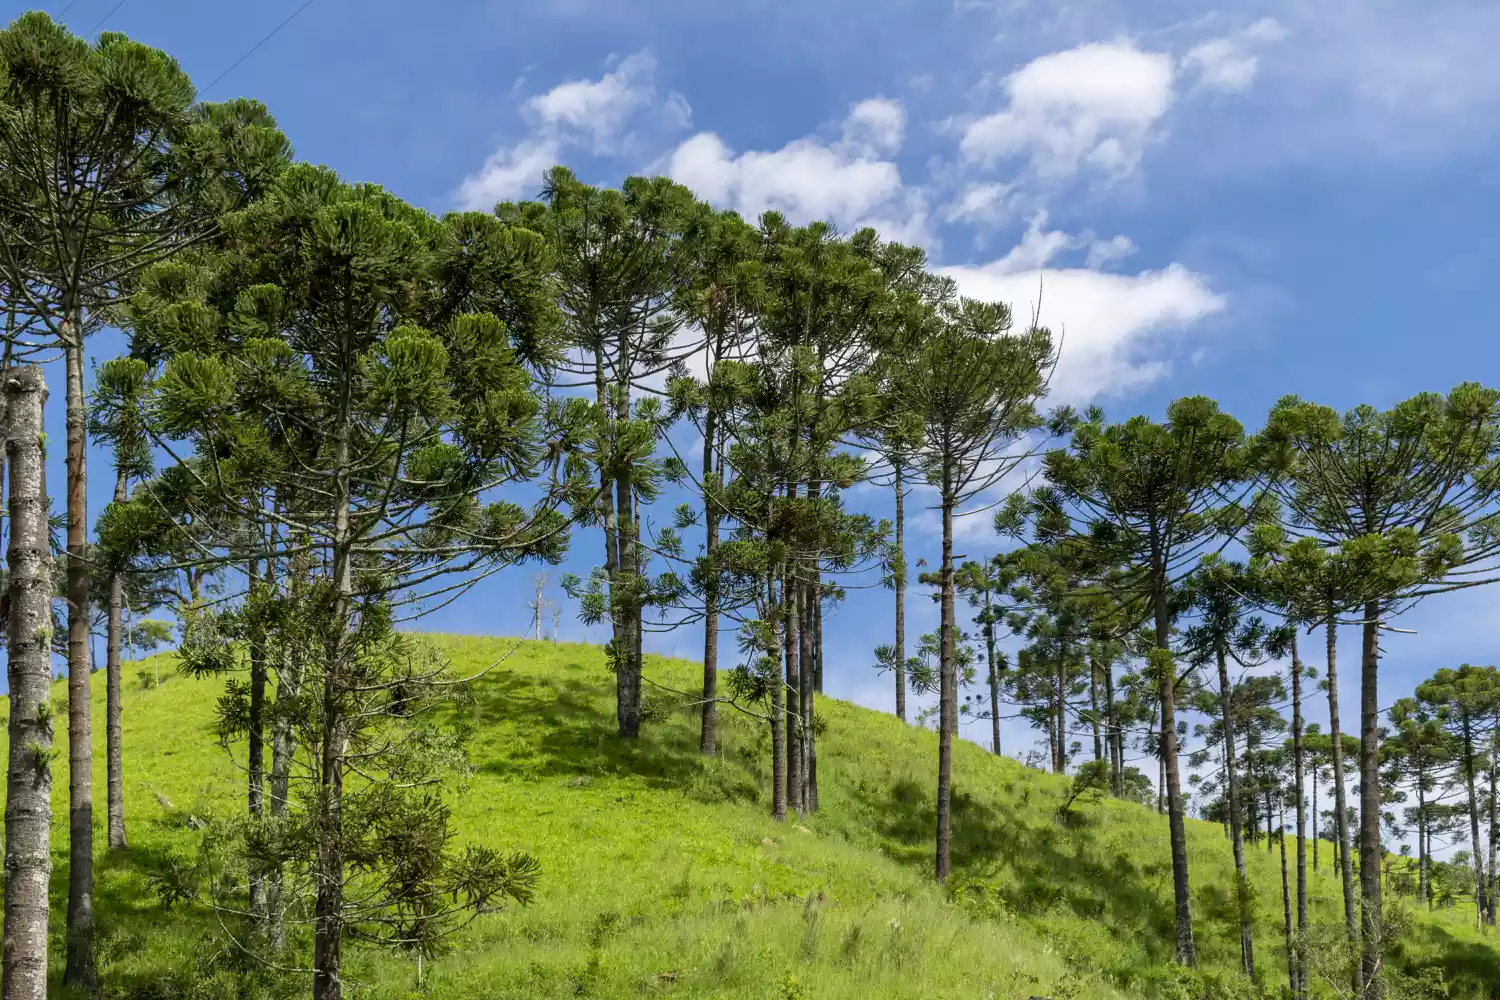 Араукарии бразильские, растущие на пышном травянистом склоне холма